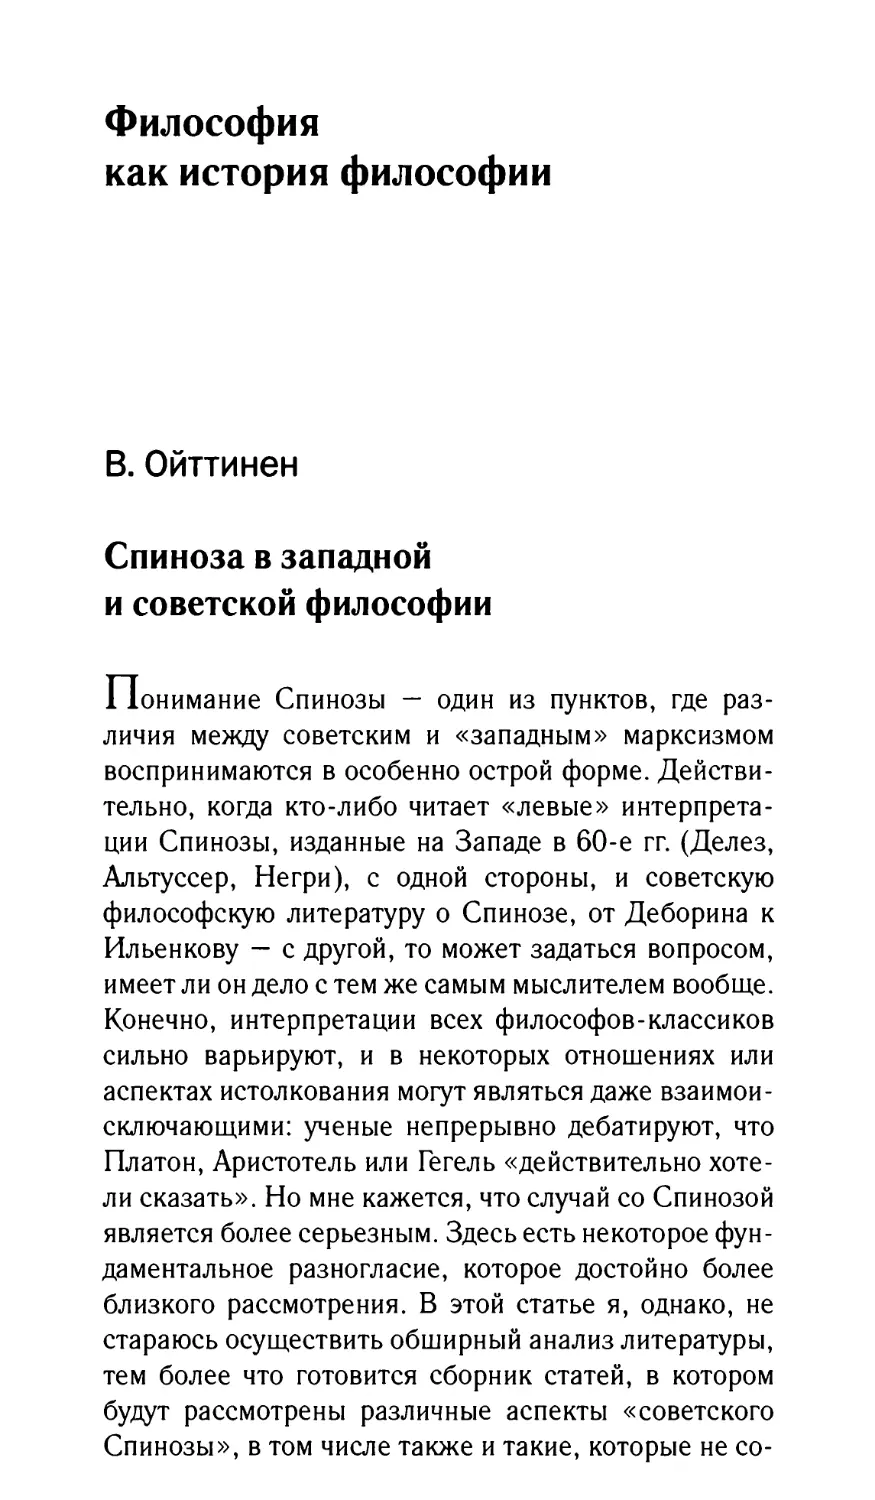 Ойттинен В. Спиноза в западной и советской философии